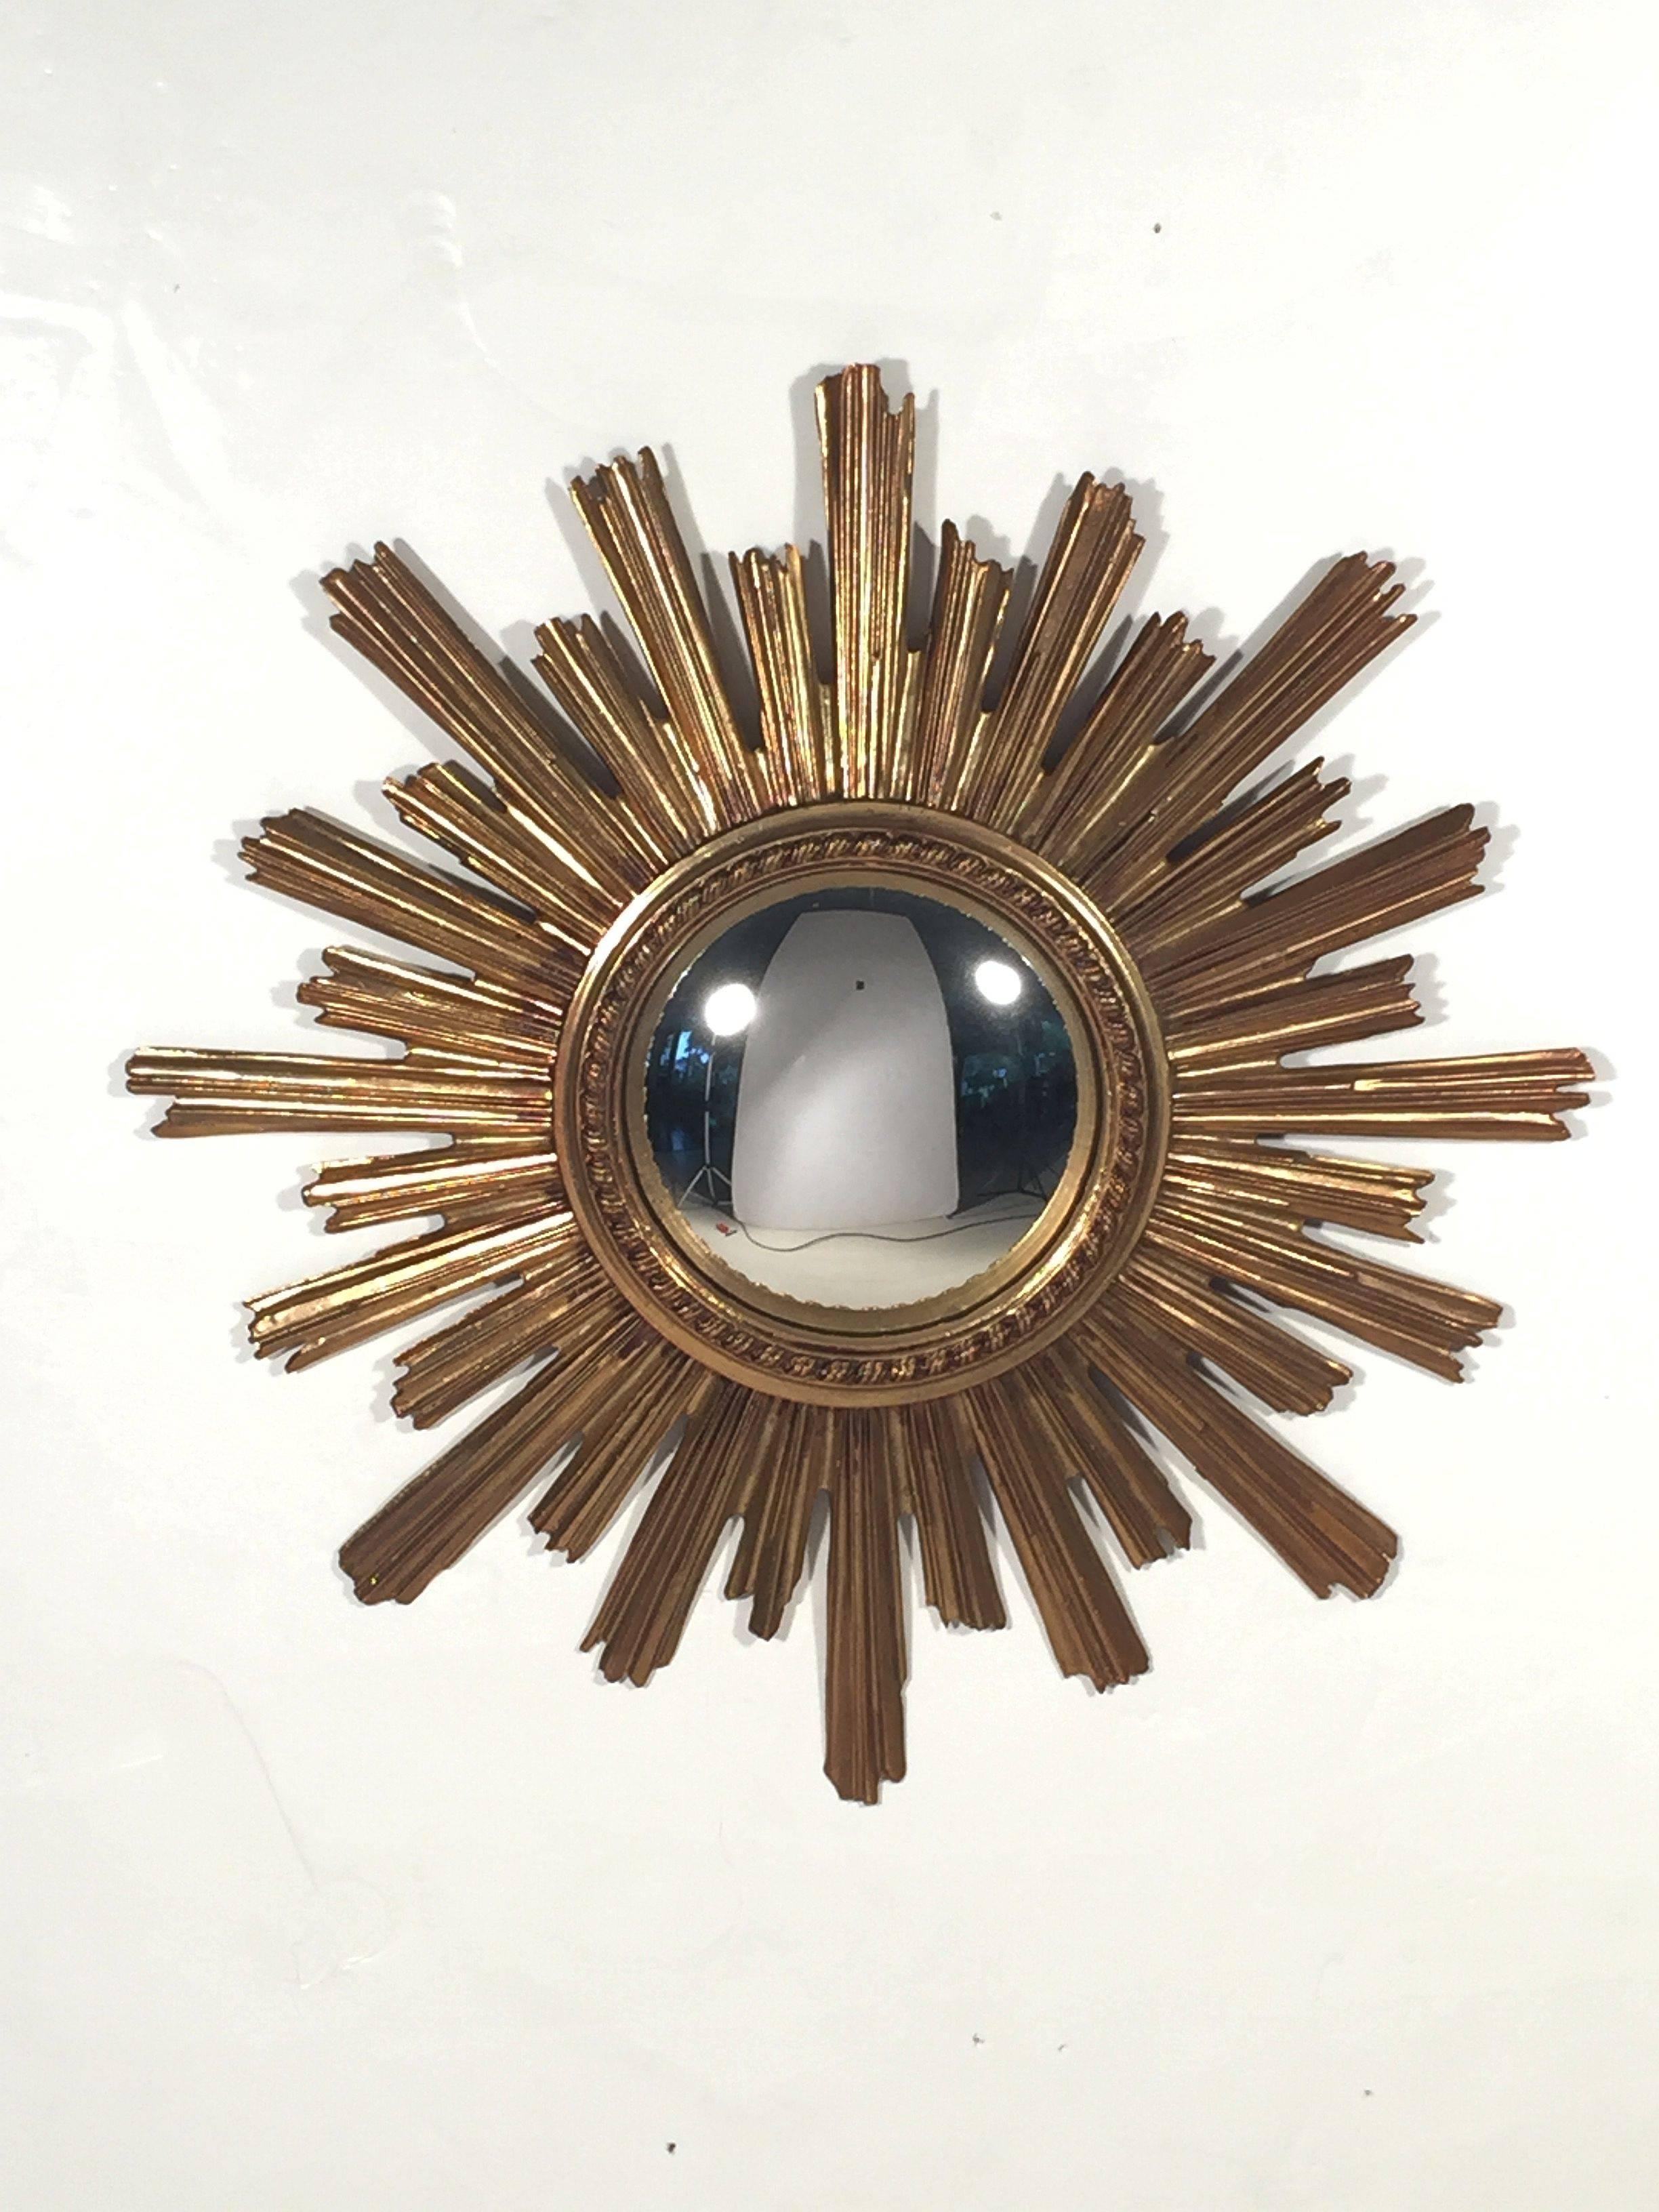 A lovely French gilt sunburst (or starburst) mirror, 23 1/2